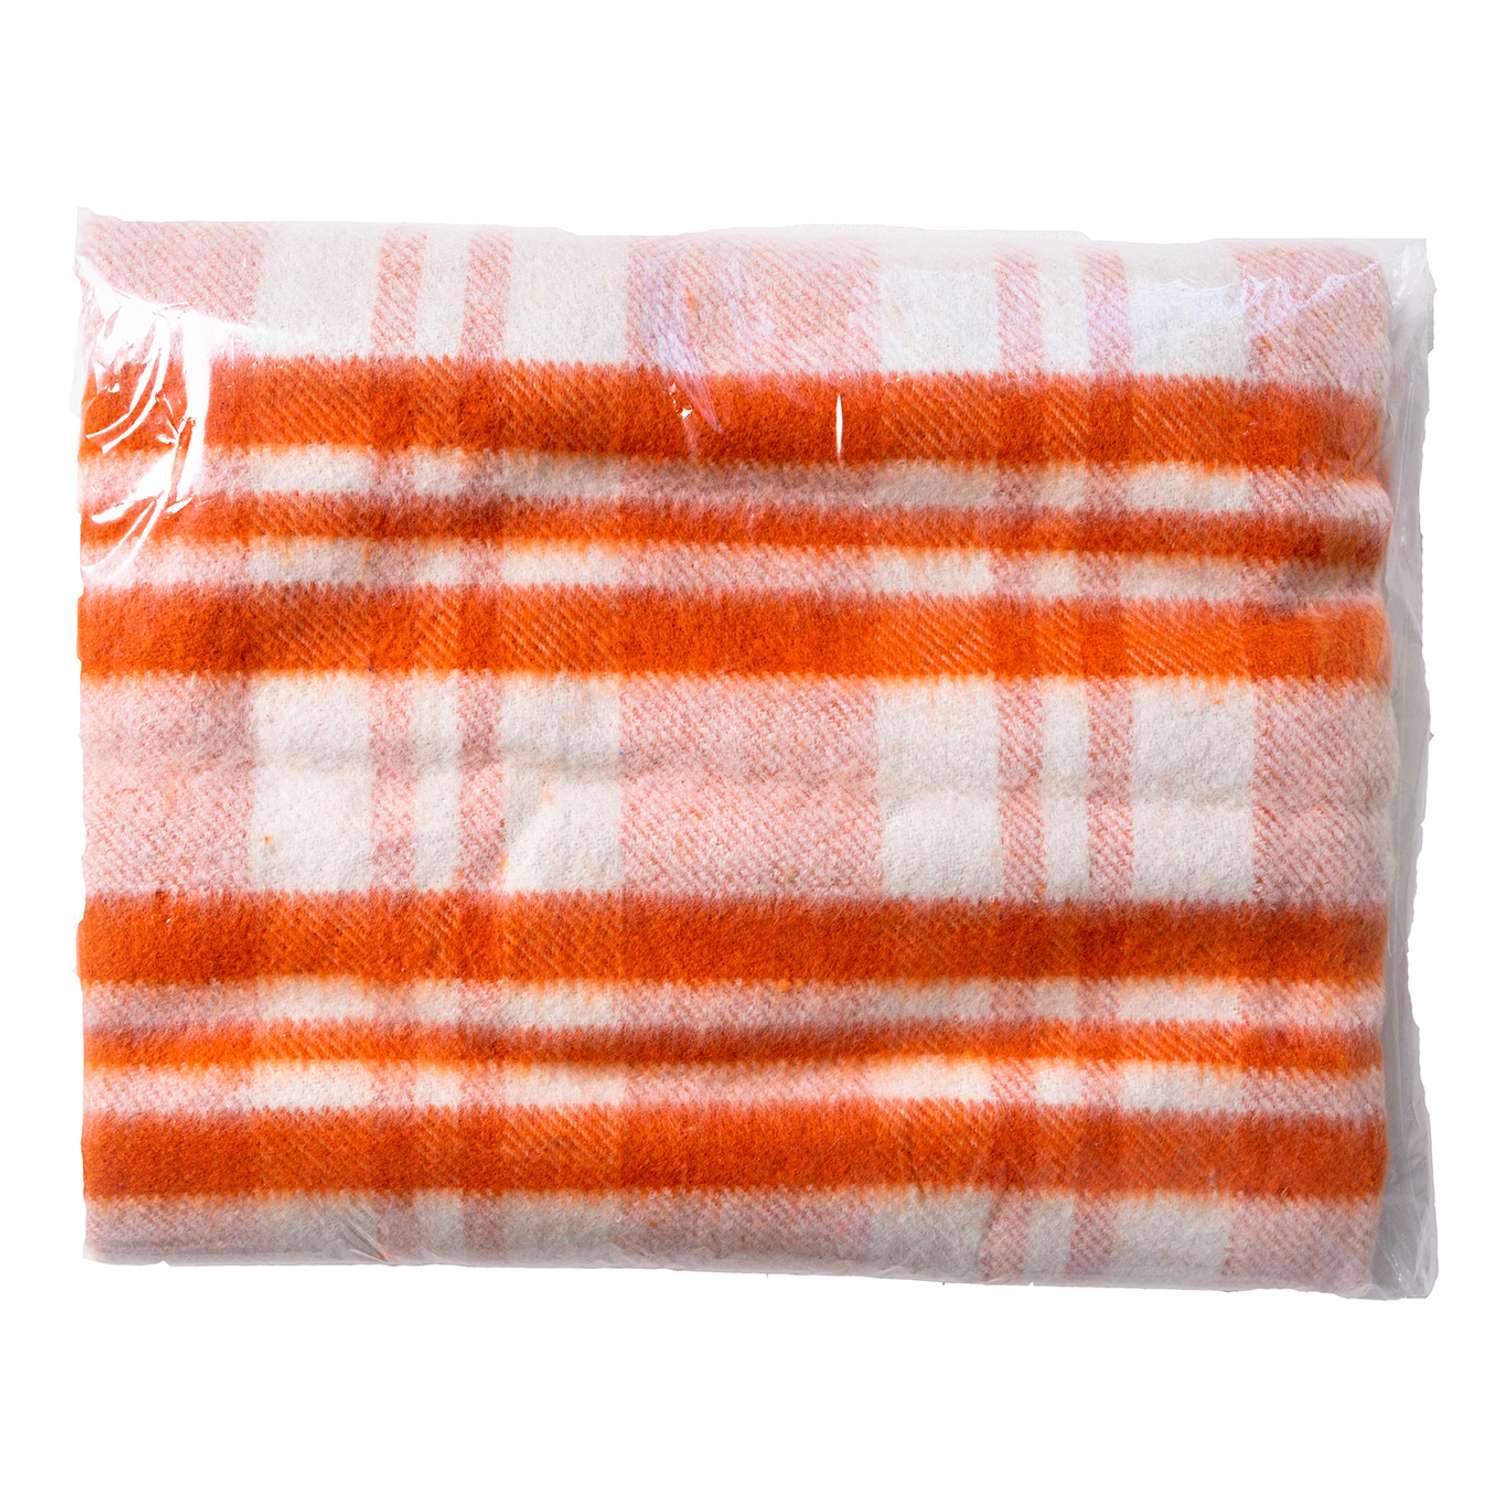 Одеяло байковое Суконная фабрика г. Шуя 140х205 рисунок мадрид оранжевый - фото 1